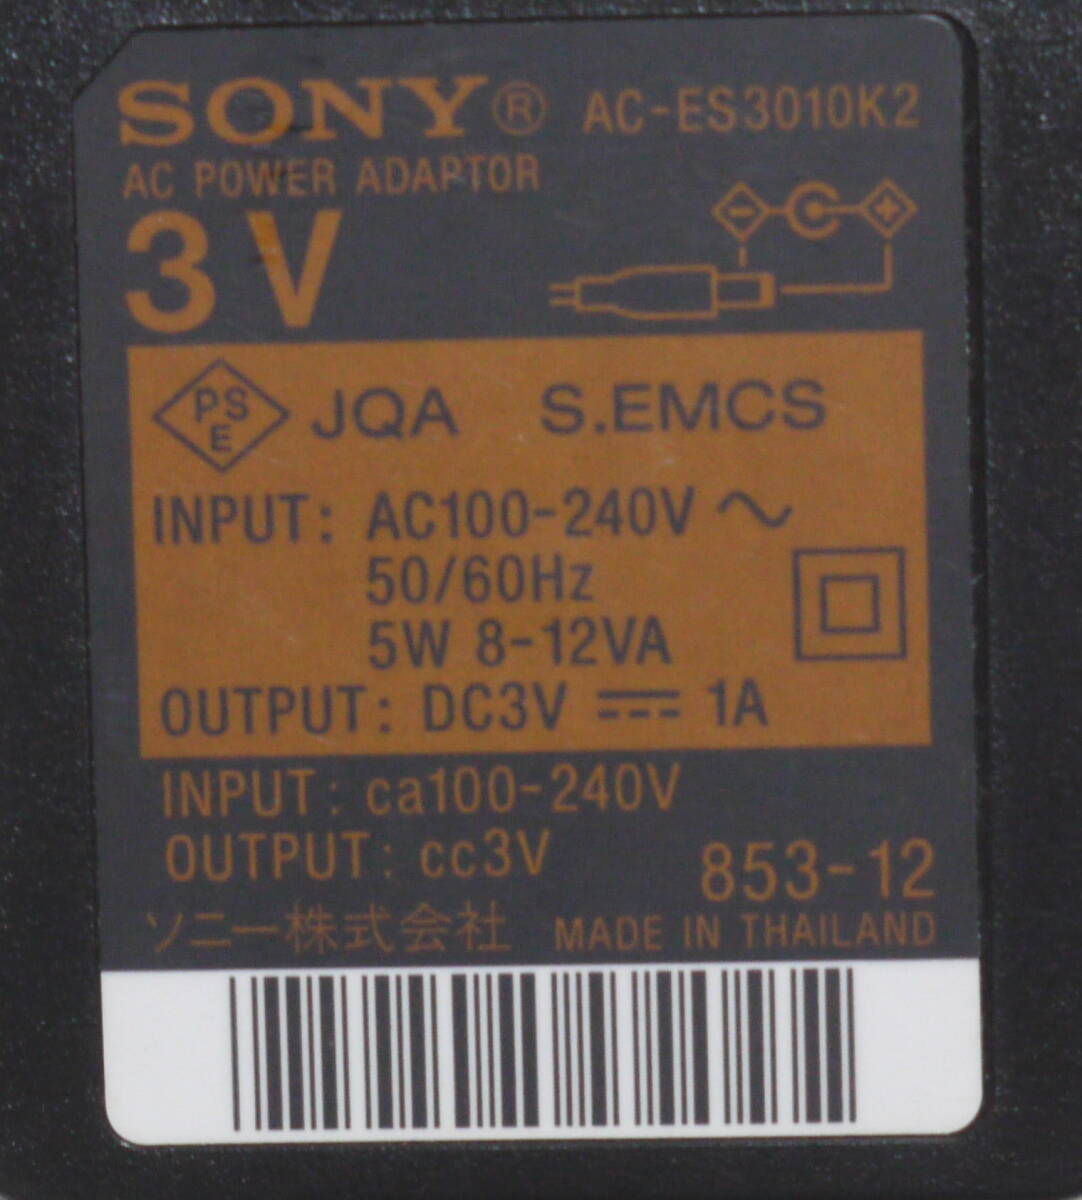 SONY оригинальный AC адаптор AC-ES3010K2 DC3V 1A